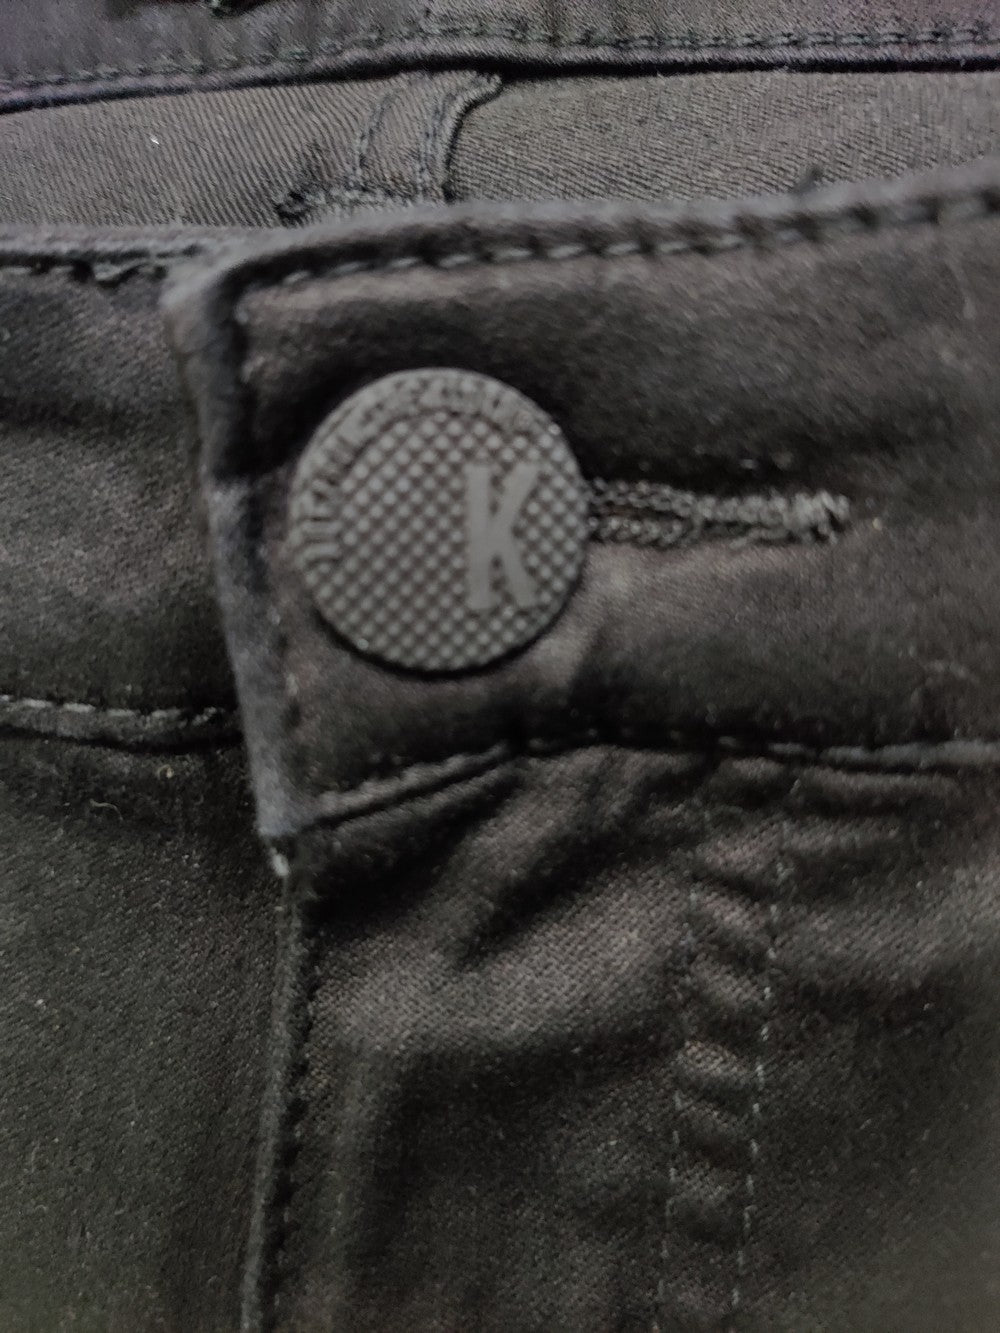 KUT Branded Original Denim Jeans For Men